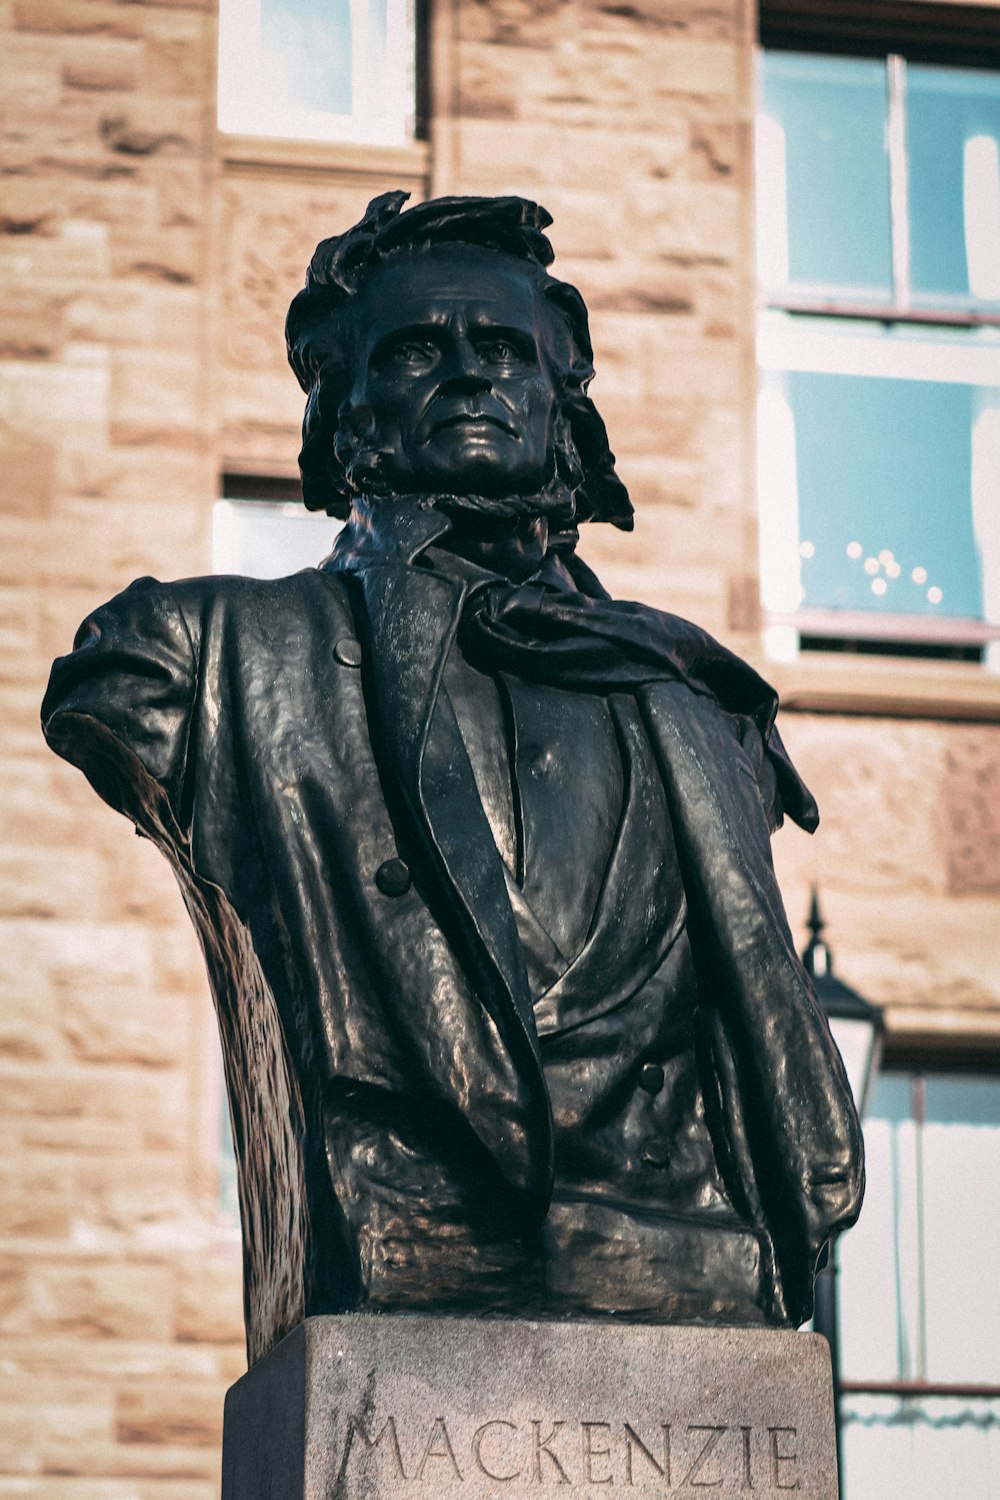 a close up of a statue of a man in front of a building